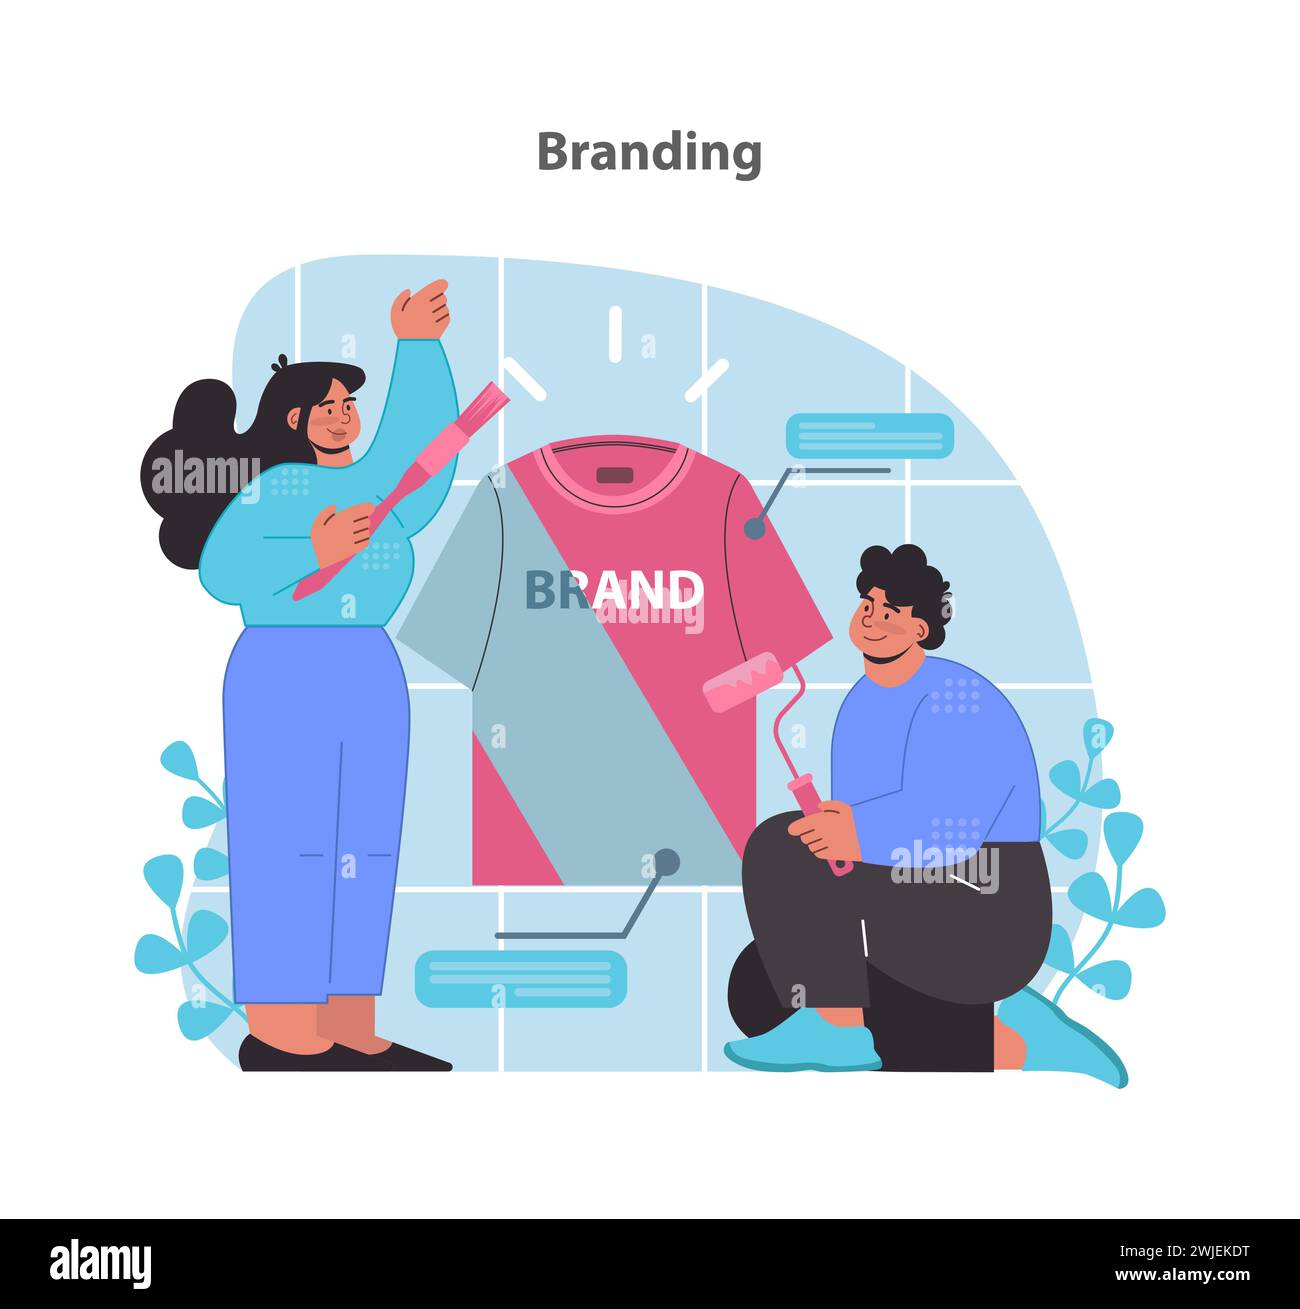 Branding-Konzept. Design einer visuellen Identität für Unternehmensbekleidung. Pinselstriche prägen die Markenwahrnehmung. Illustration des flachen Vektors. Stock Vektor